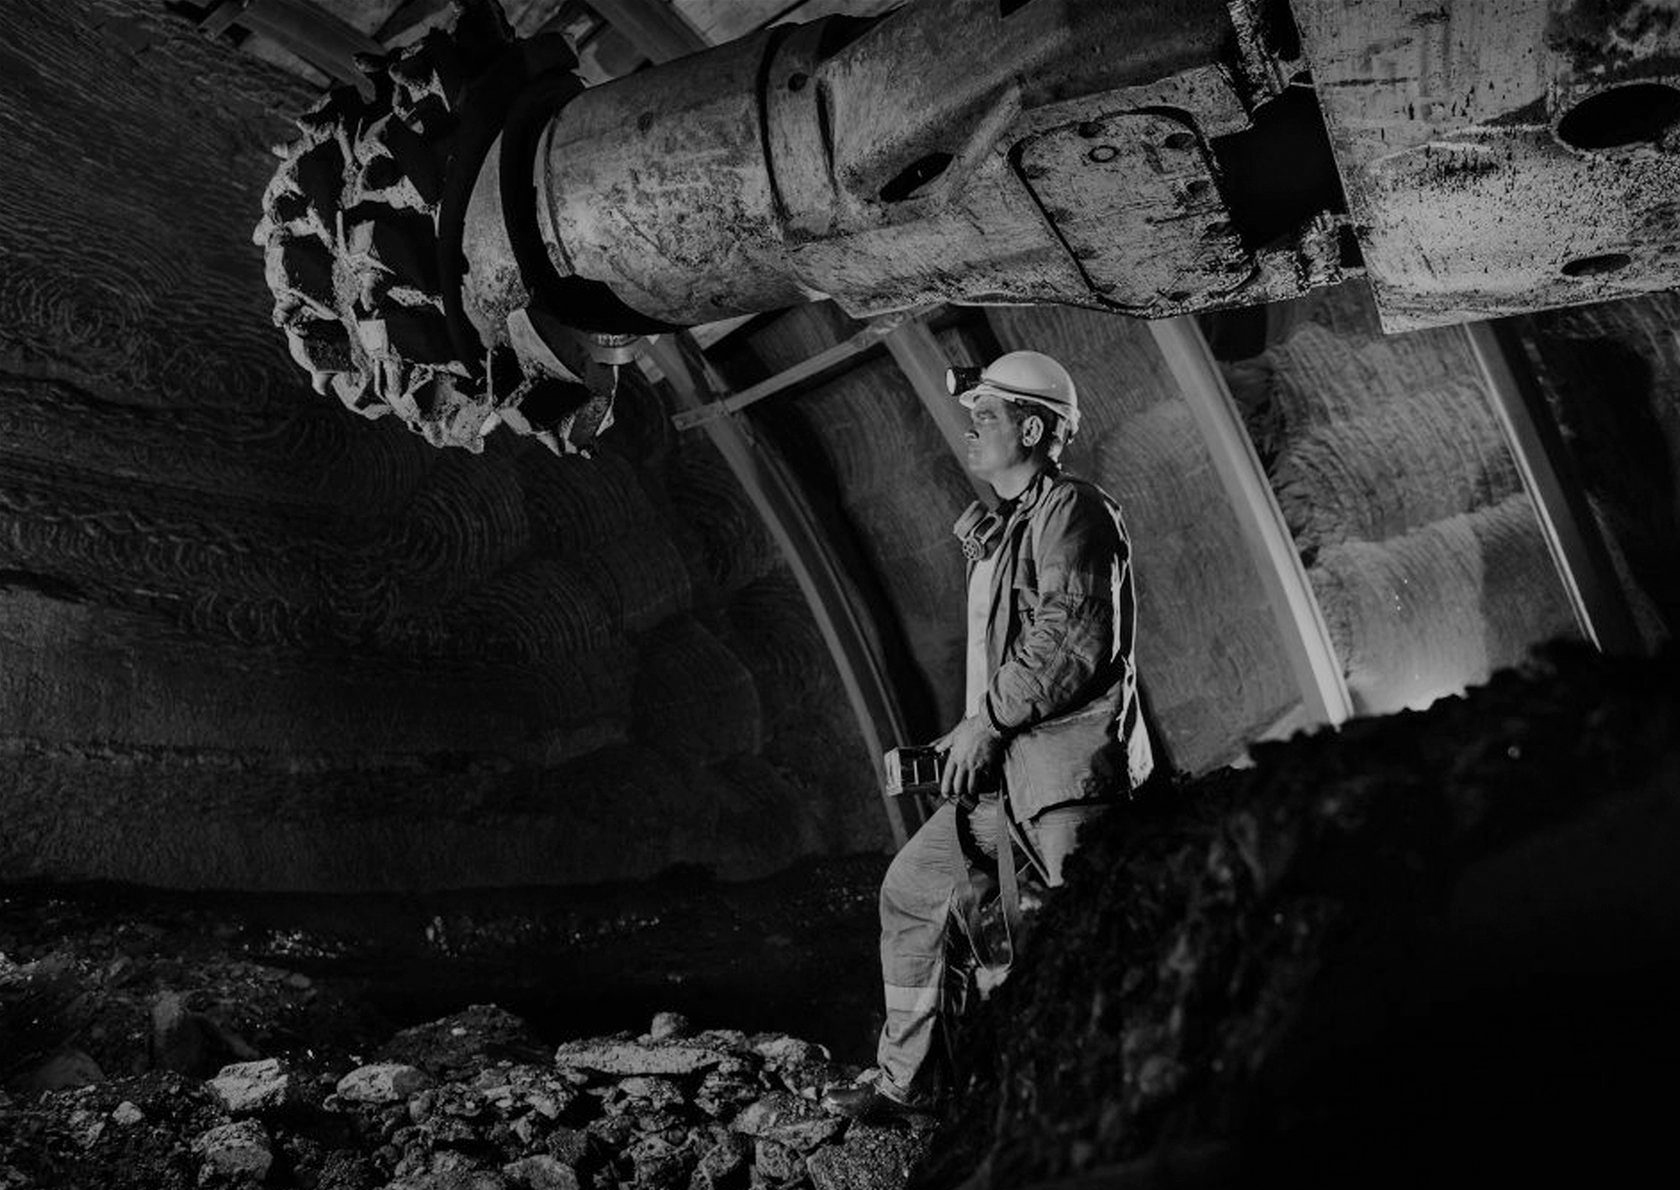 Фото как добывают уголь в шахтах